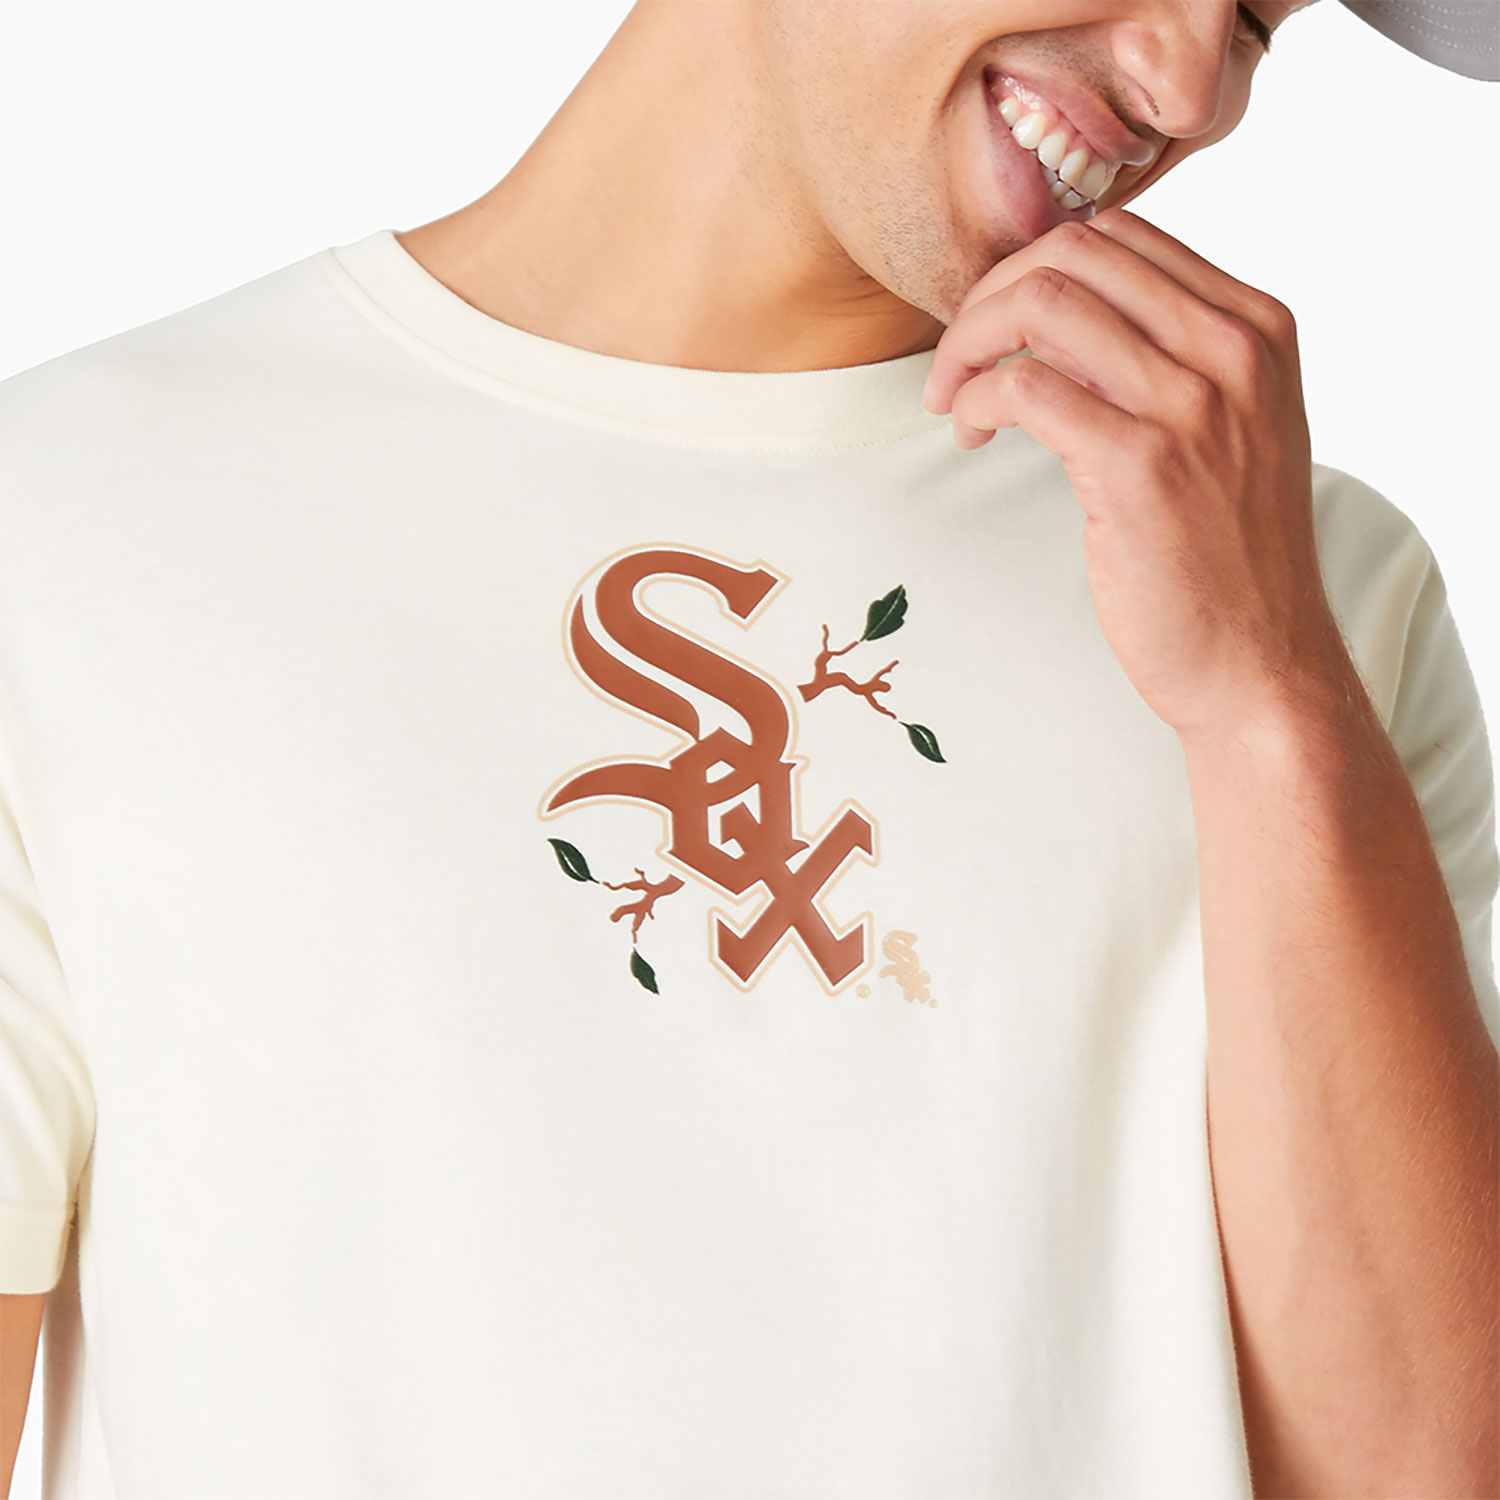 Chicago White Sox Camp White T-Shirt